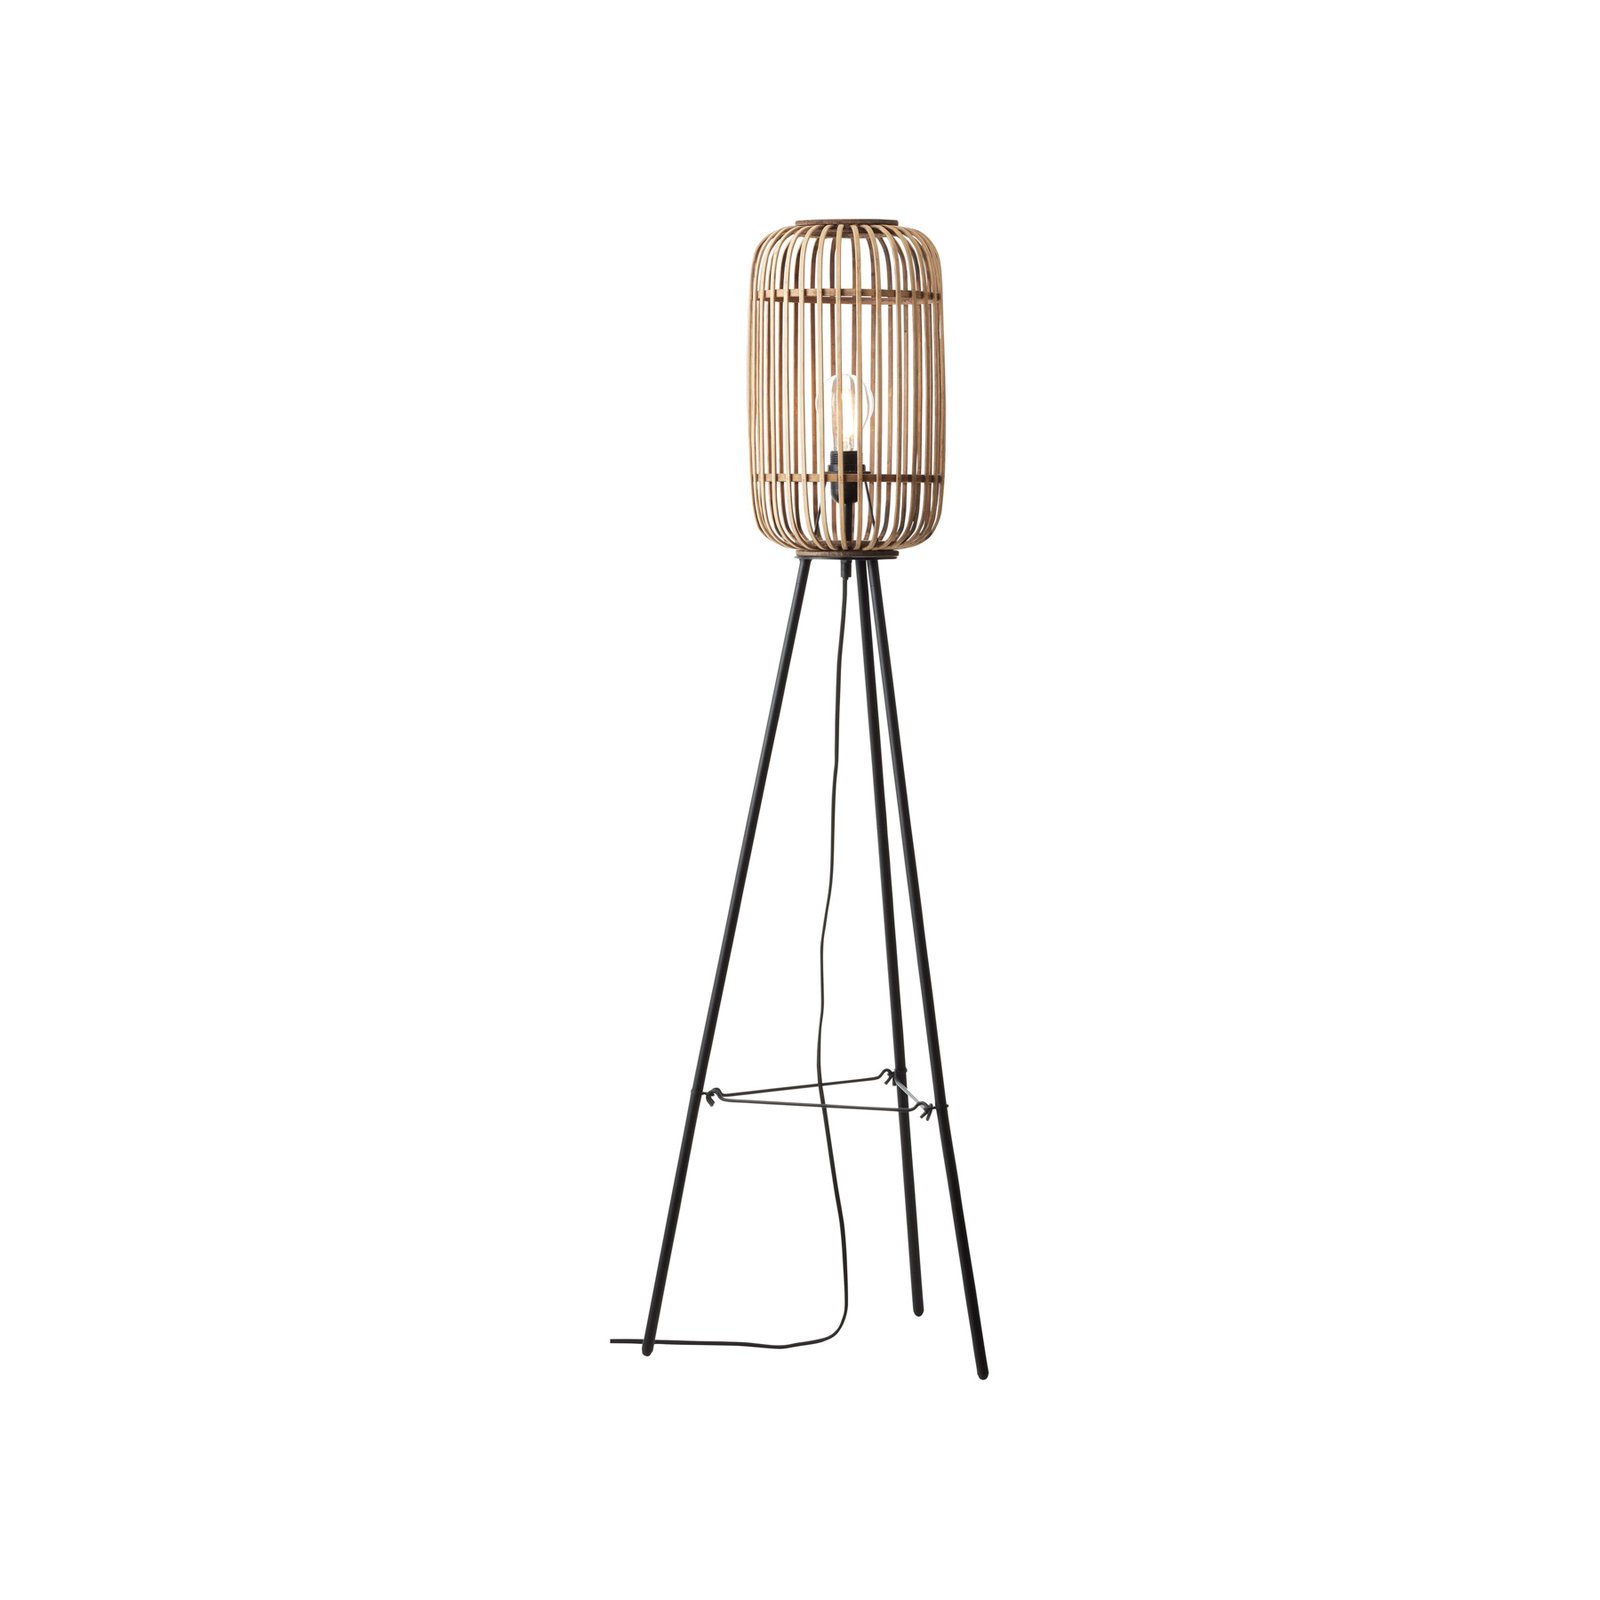 Stojací lampa Woodrow, výška 130 cm, světlé dřevo, bambus/kov